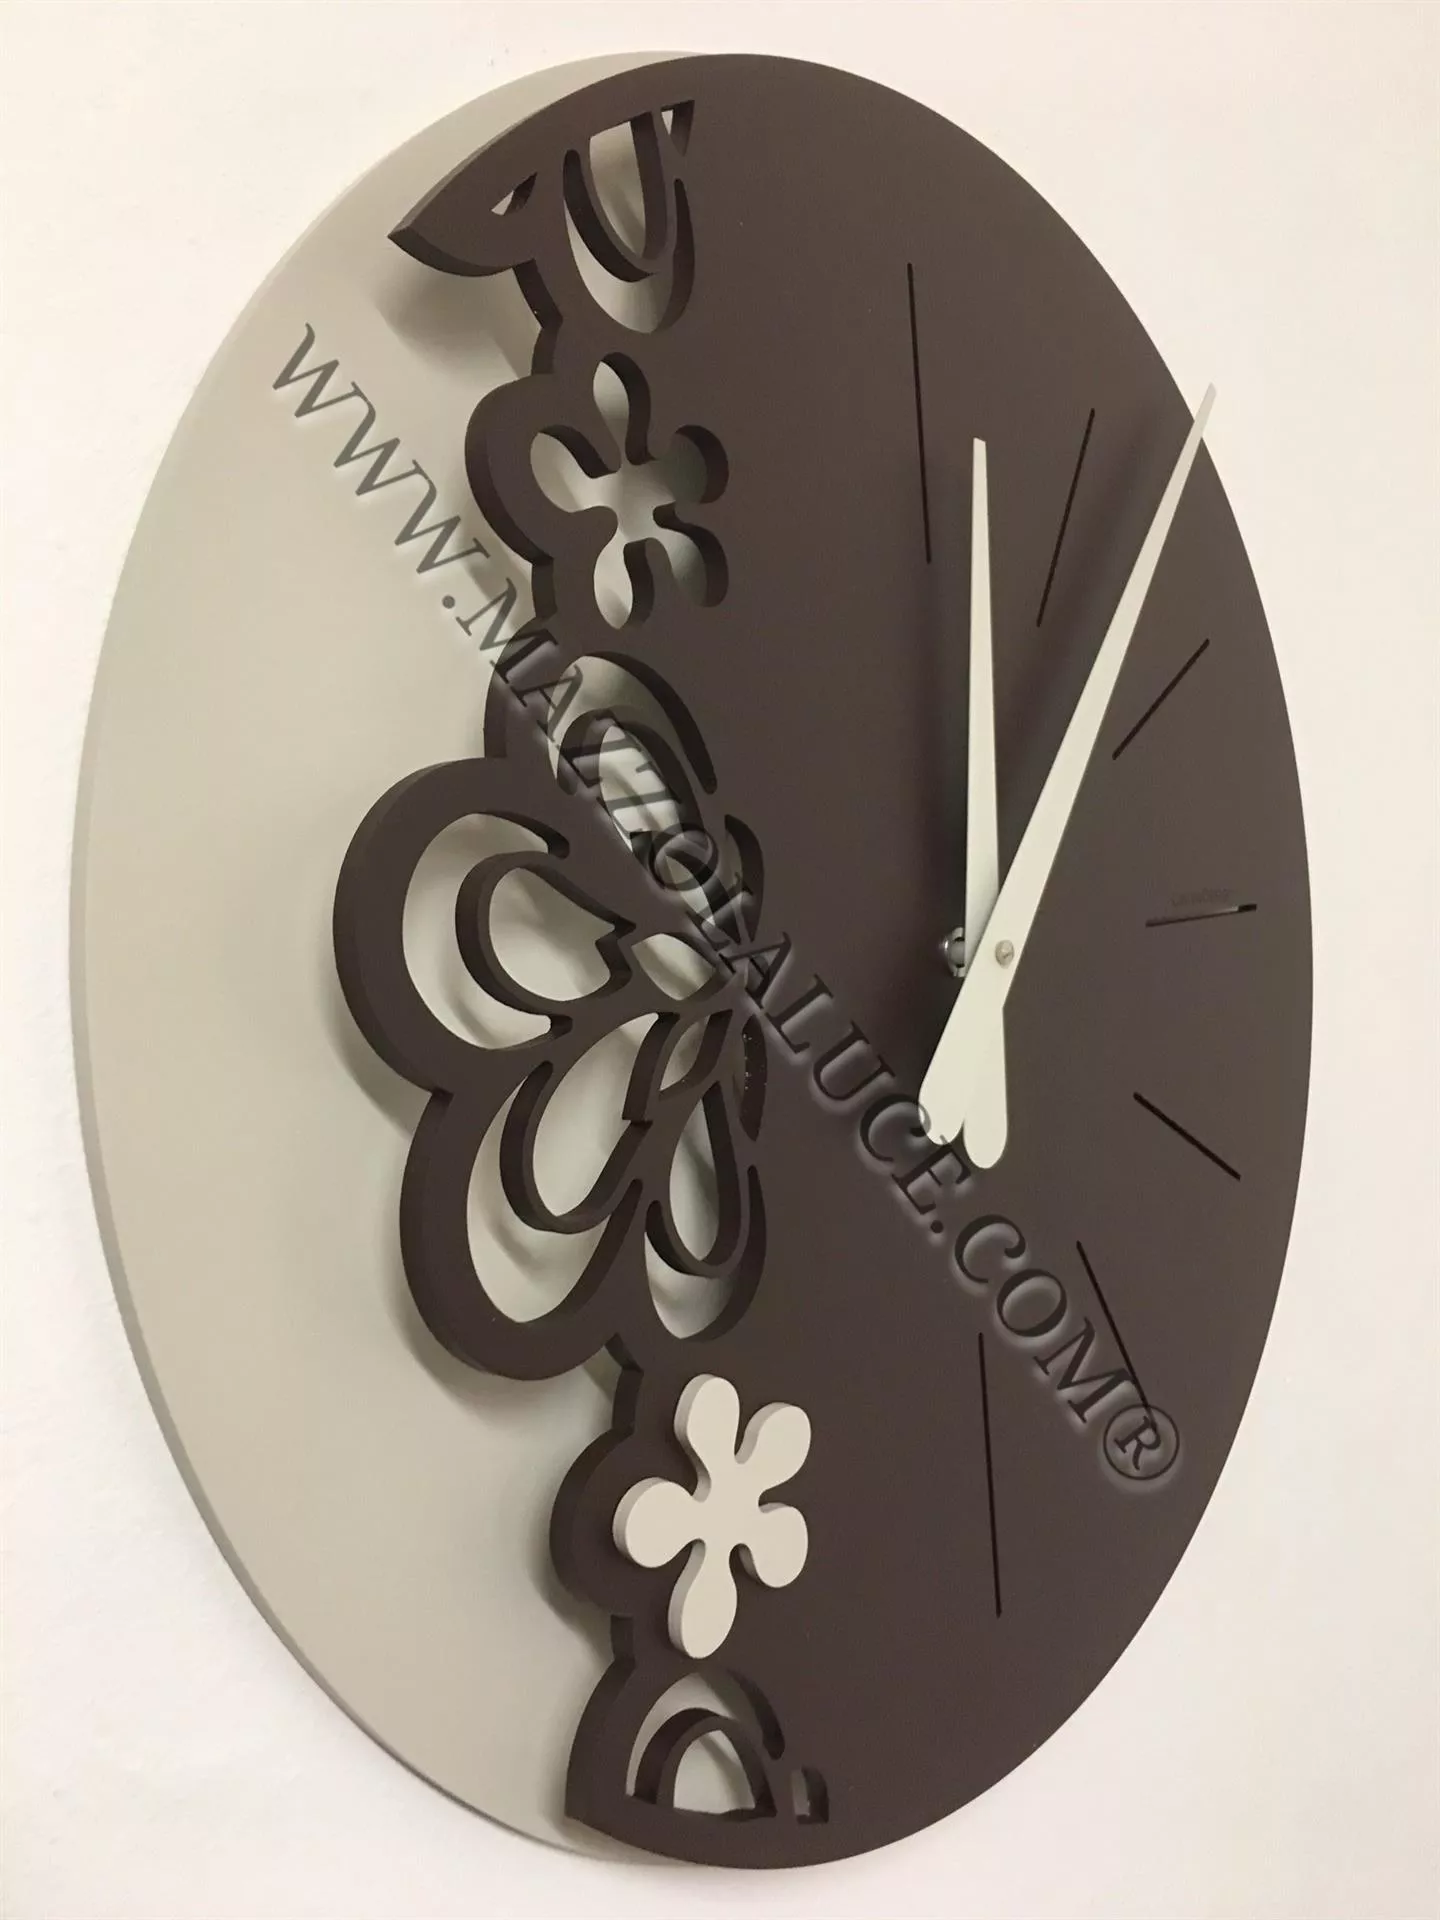 Orologio da parete design particolare legno cioccolato moderno tondo -  56-10-2-69